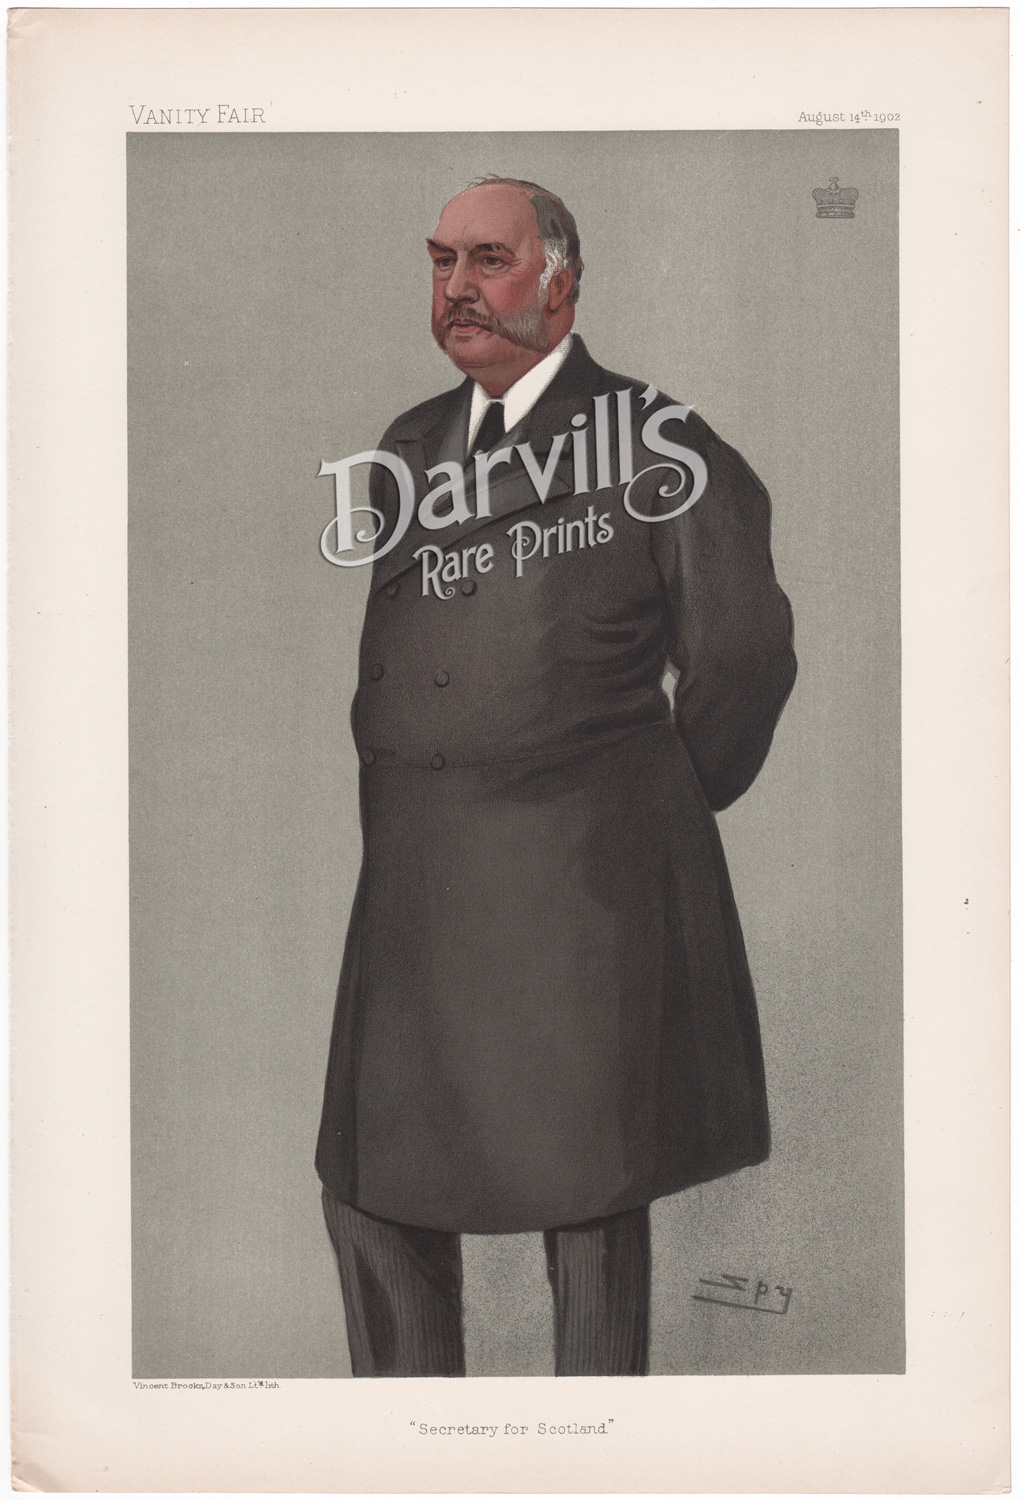 The Lord Balfour of Burleigh Aug 14 1902